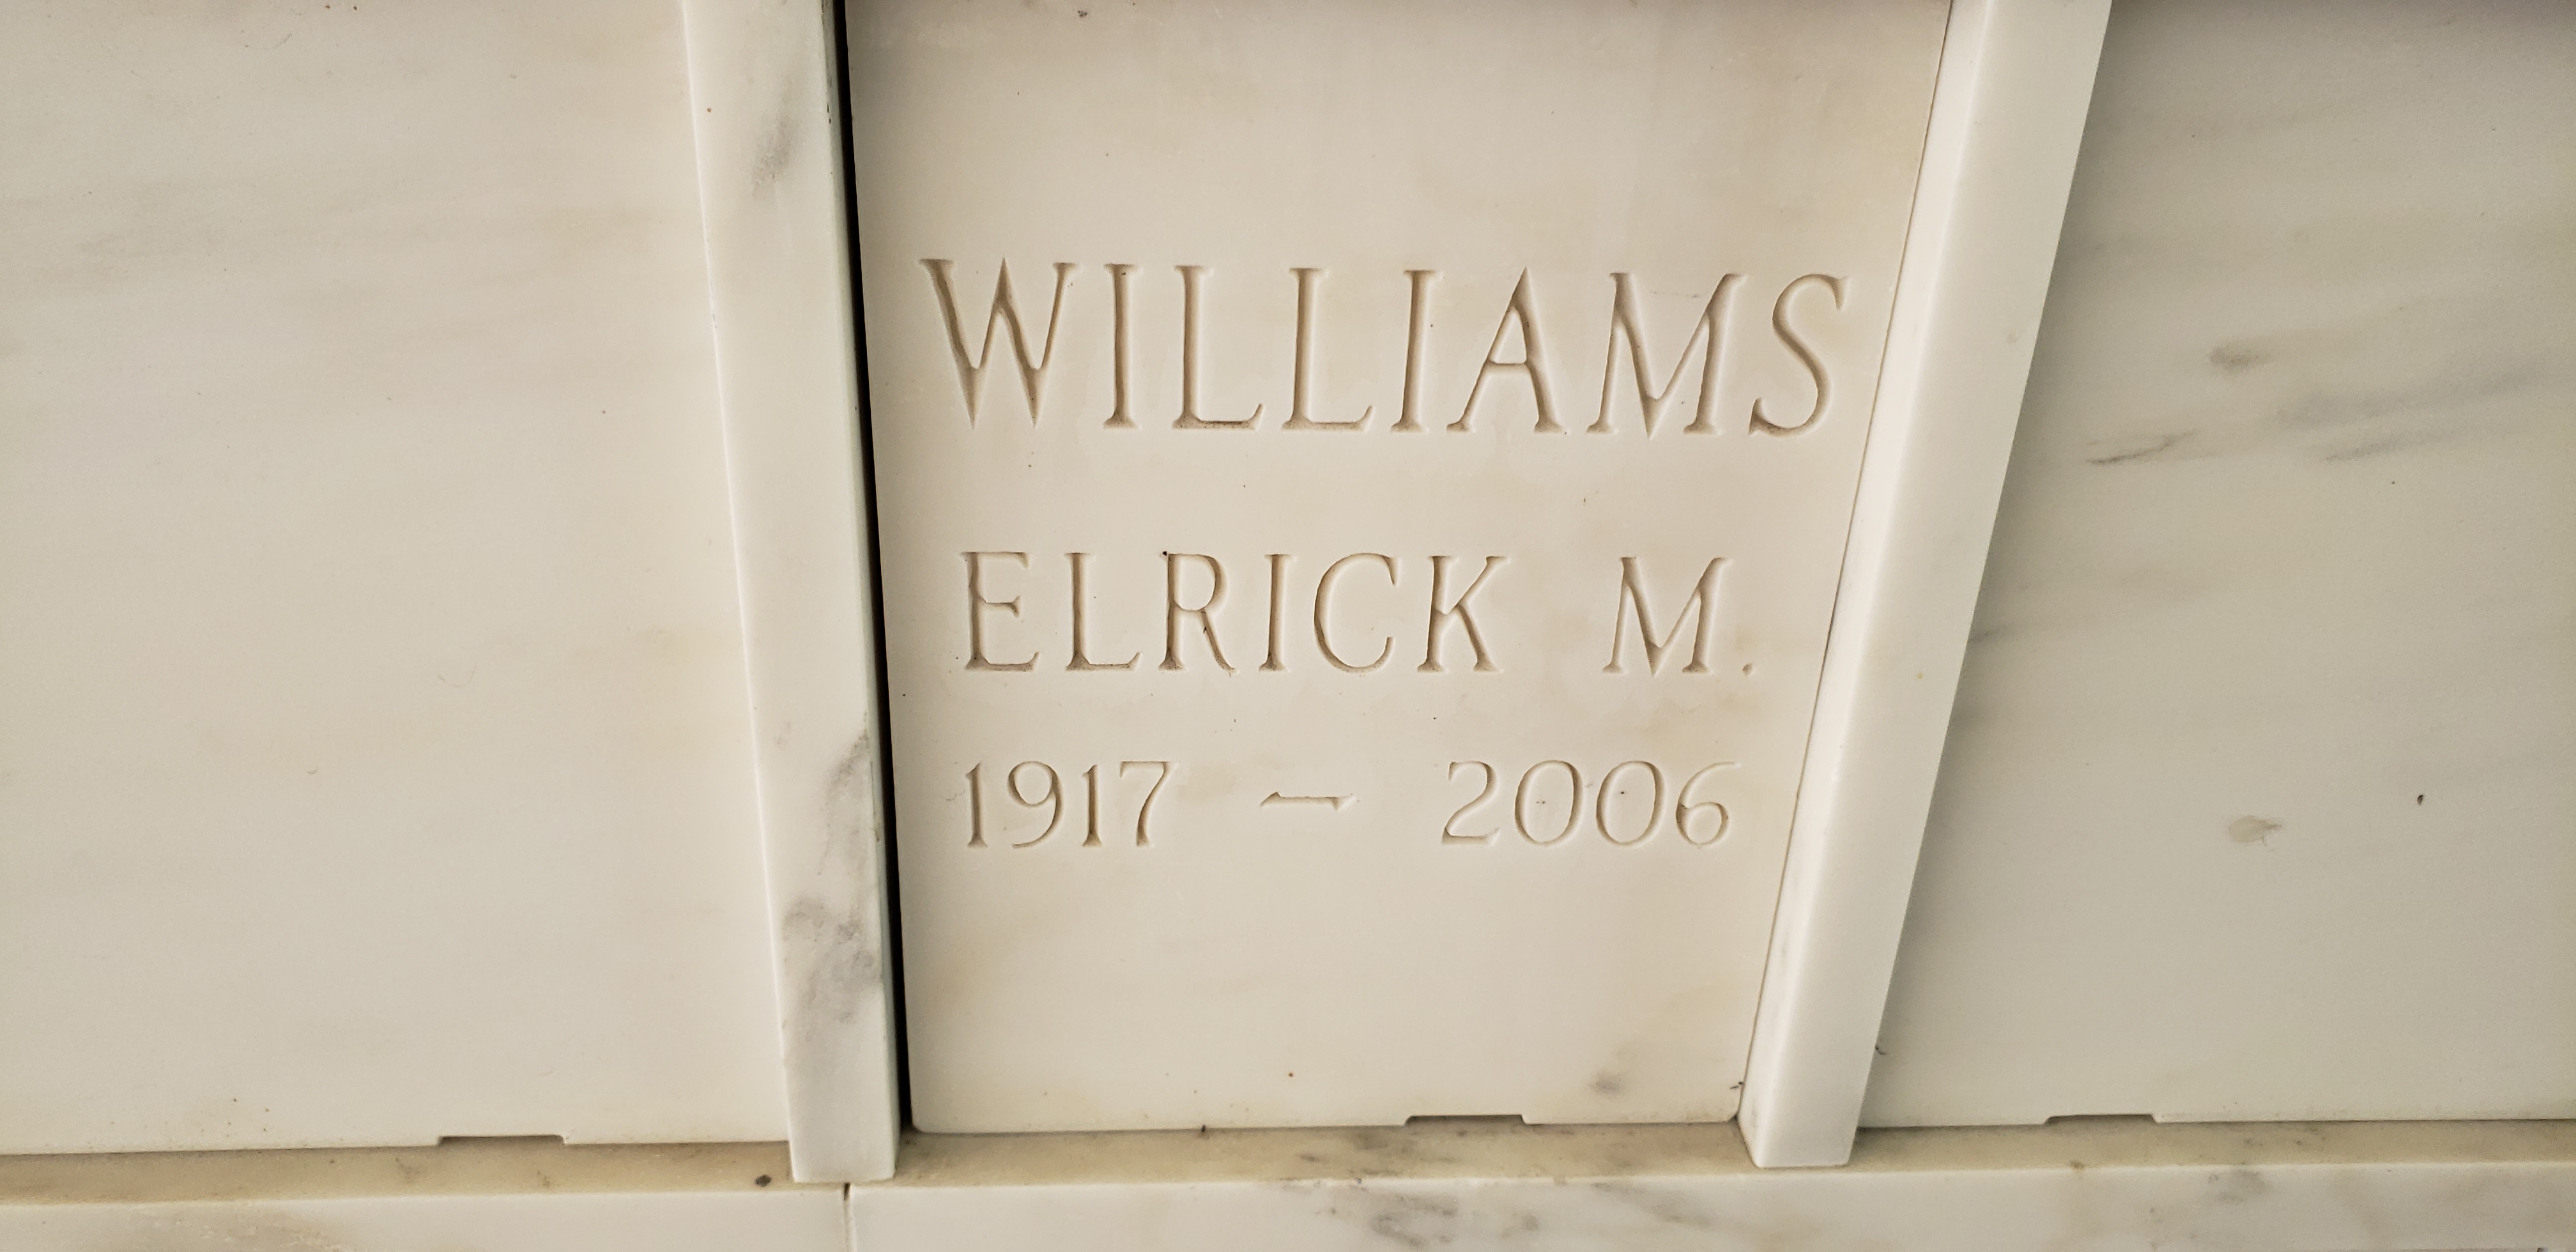 Elrick M Williams